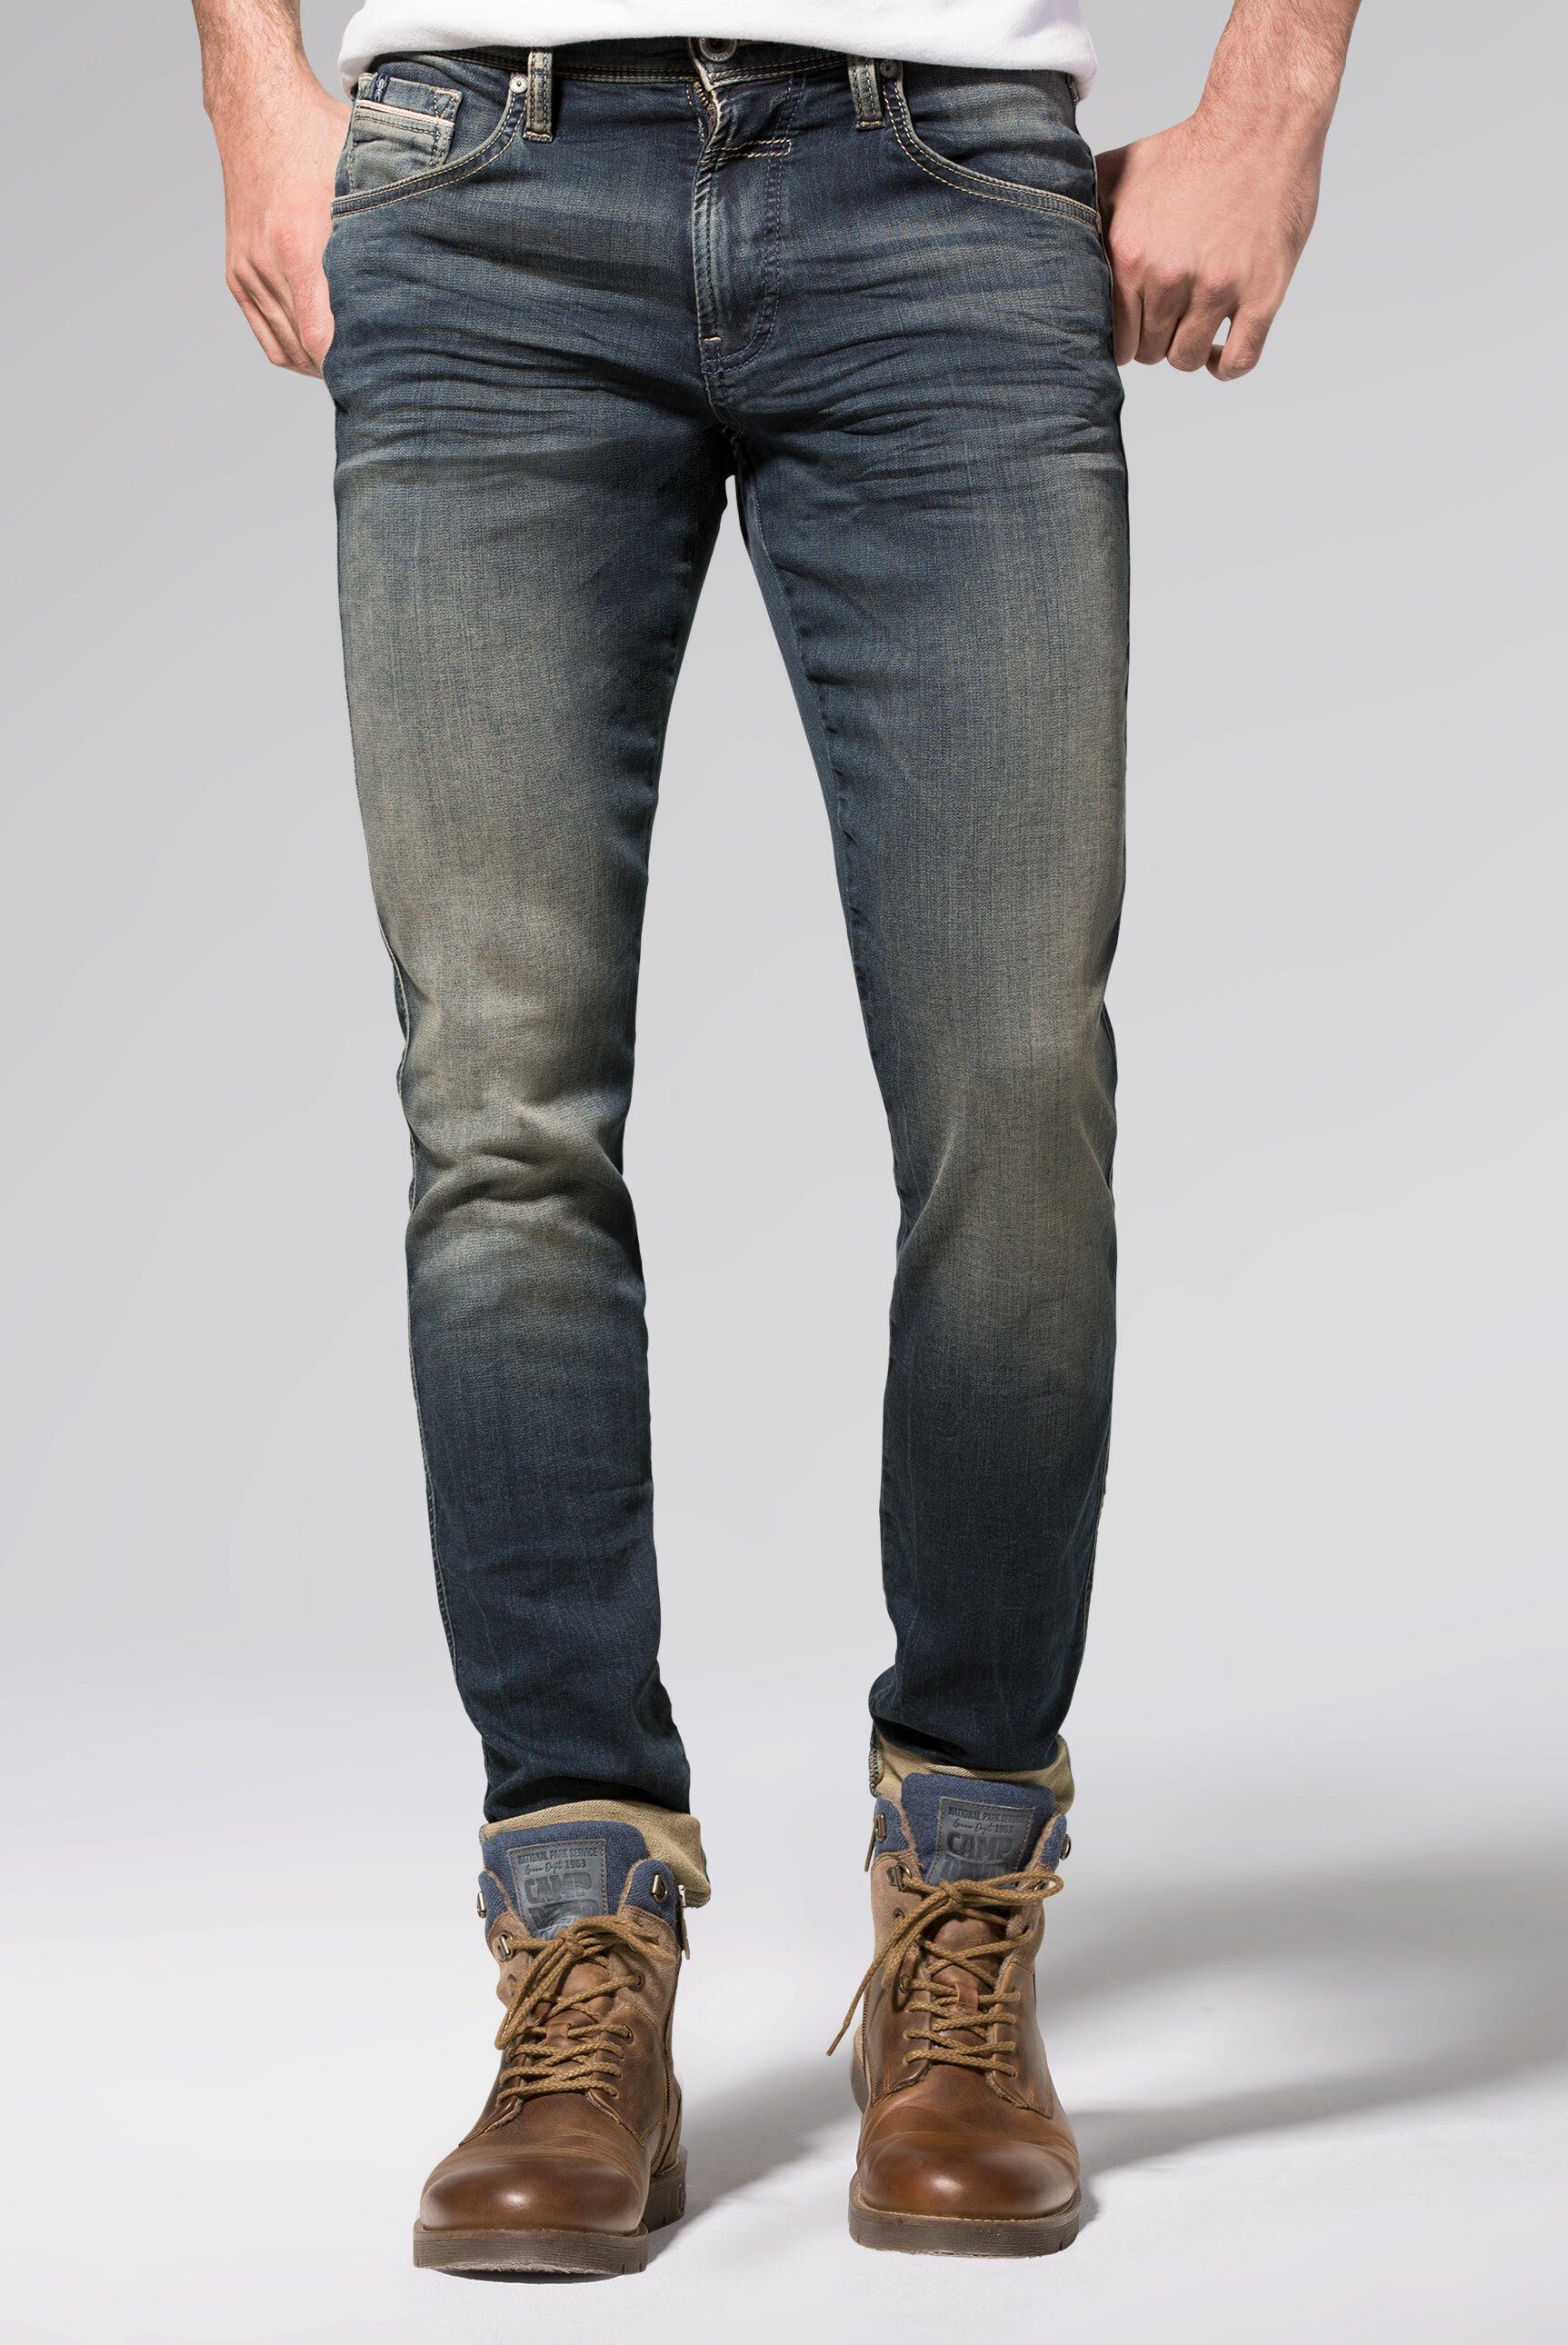 Camp David Herren Jeans online kaufen | OTTO